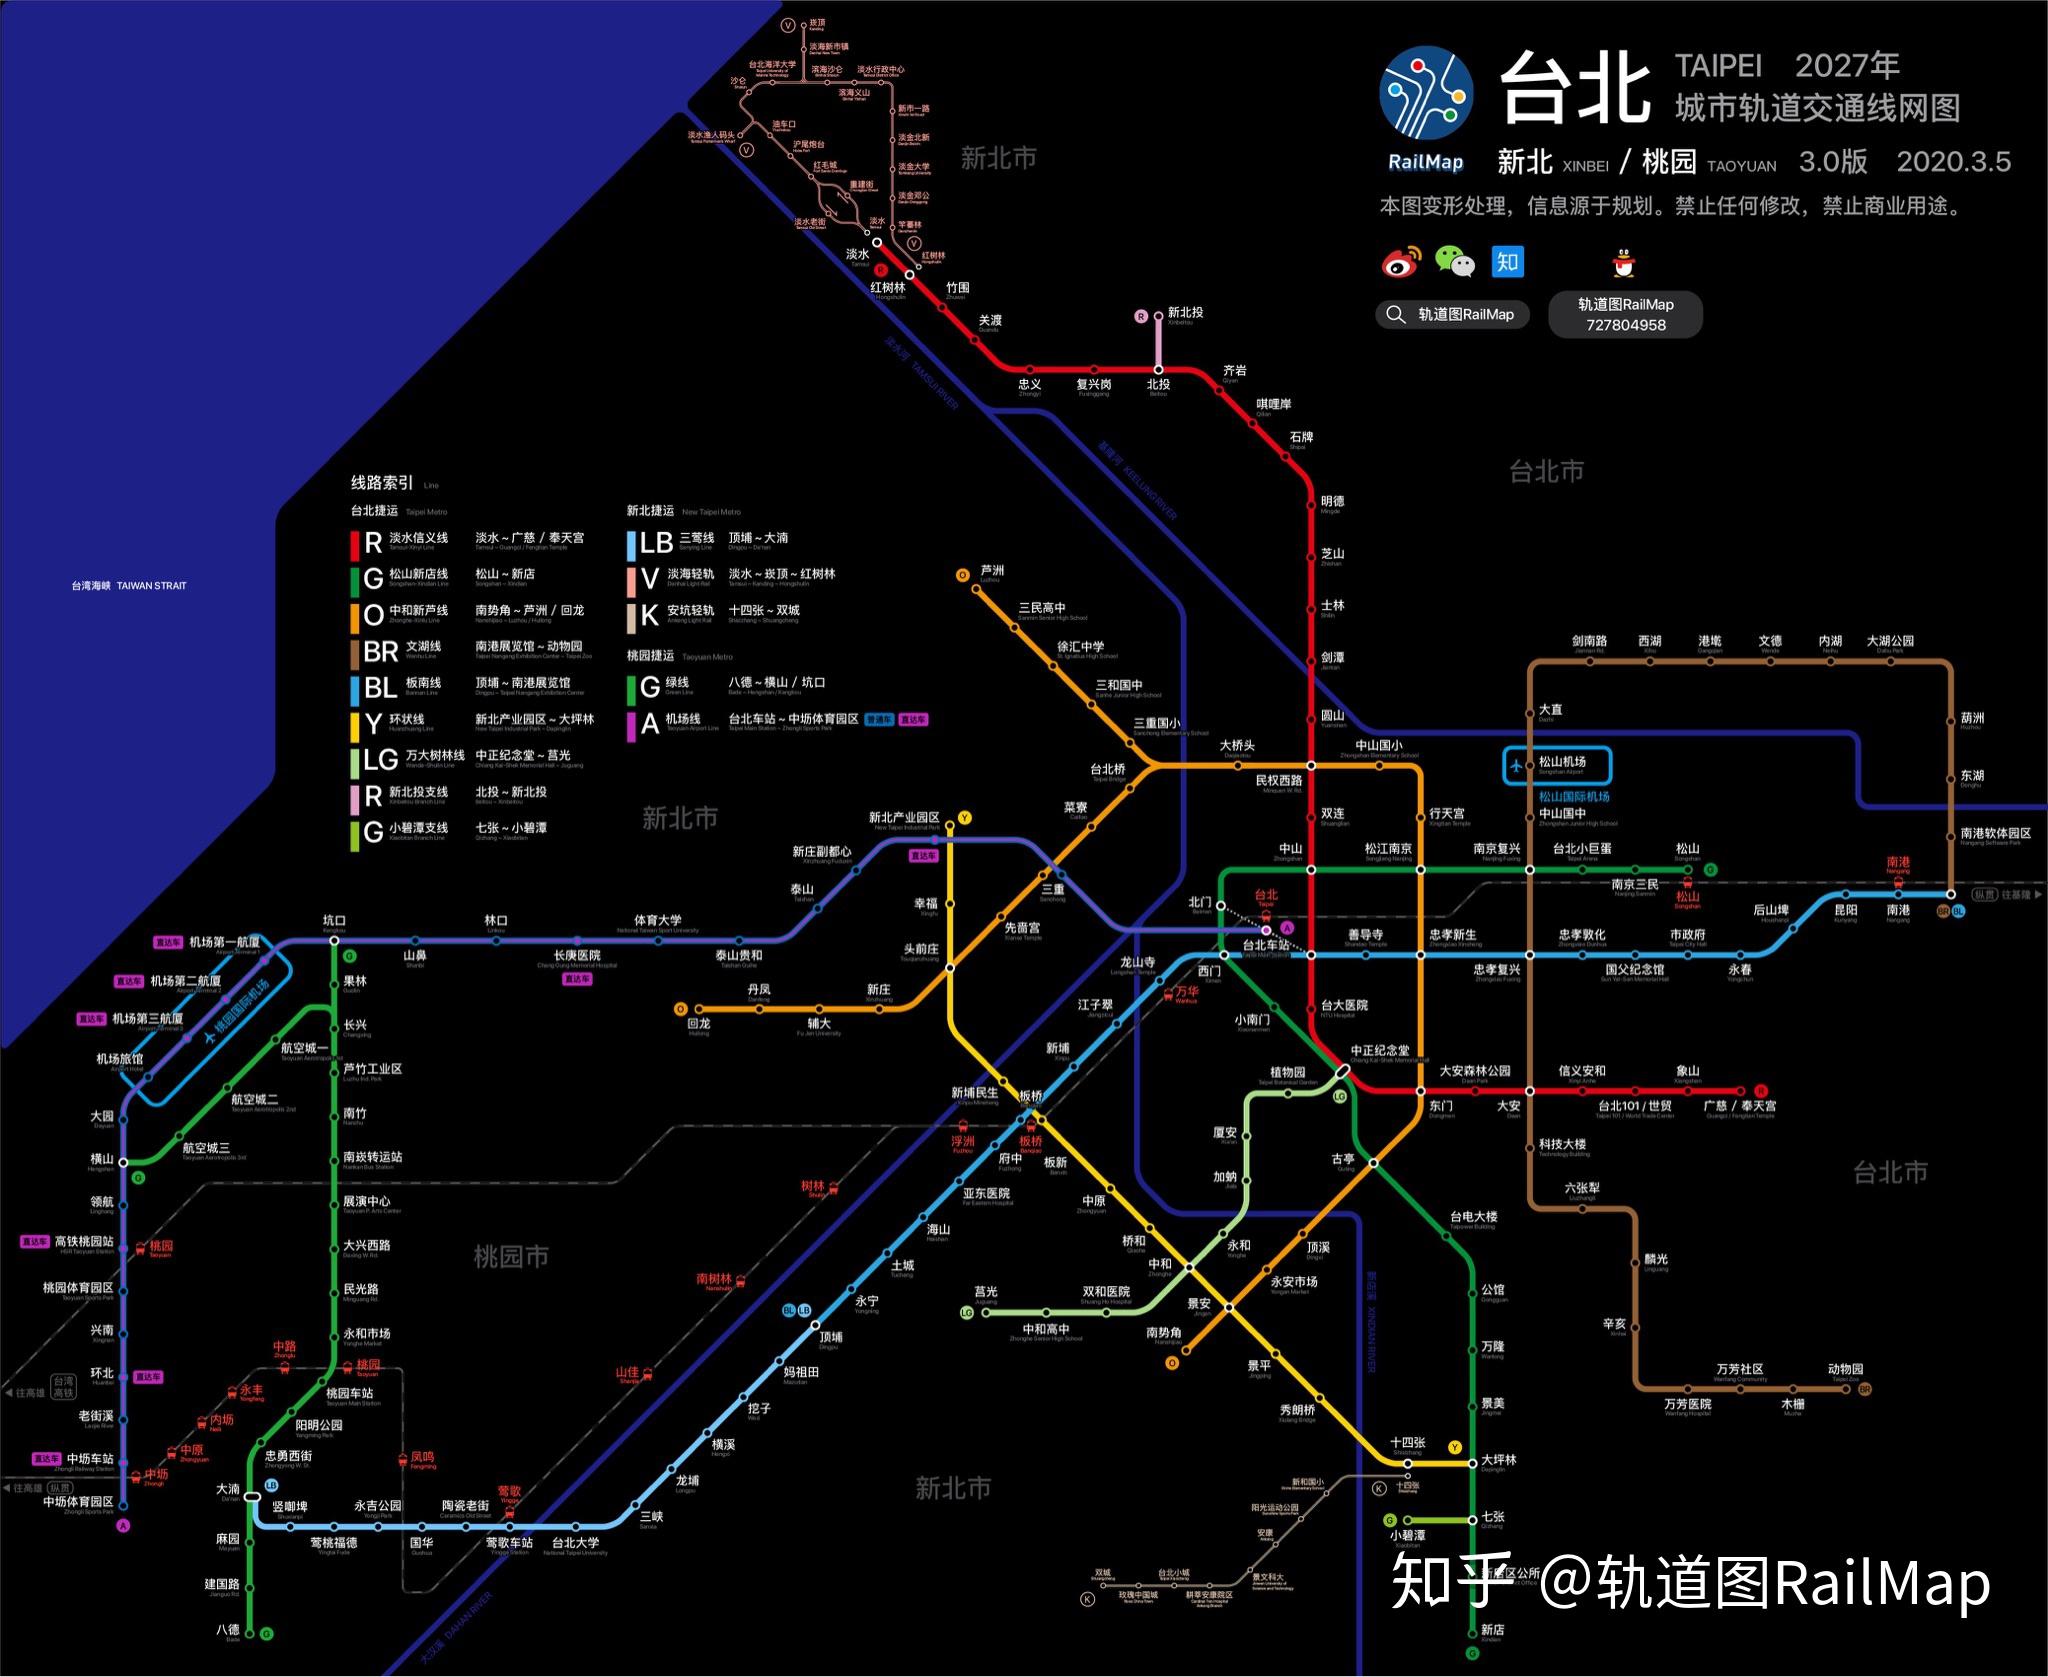 【轨道图railmap】台北/新北/桃园捷运线网图2027年/当前